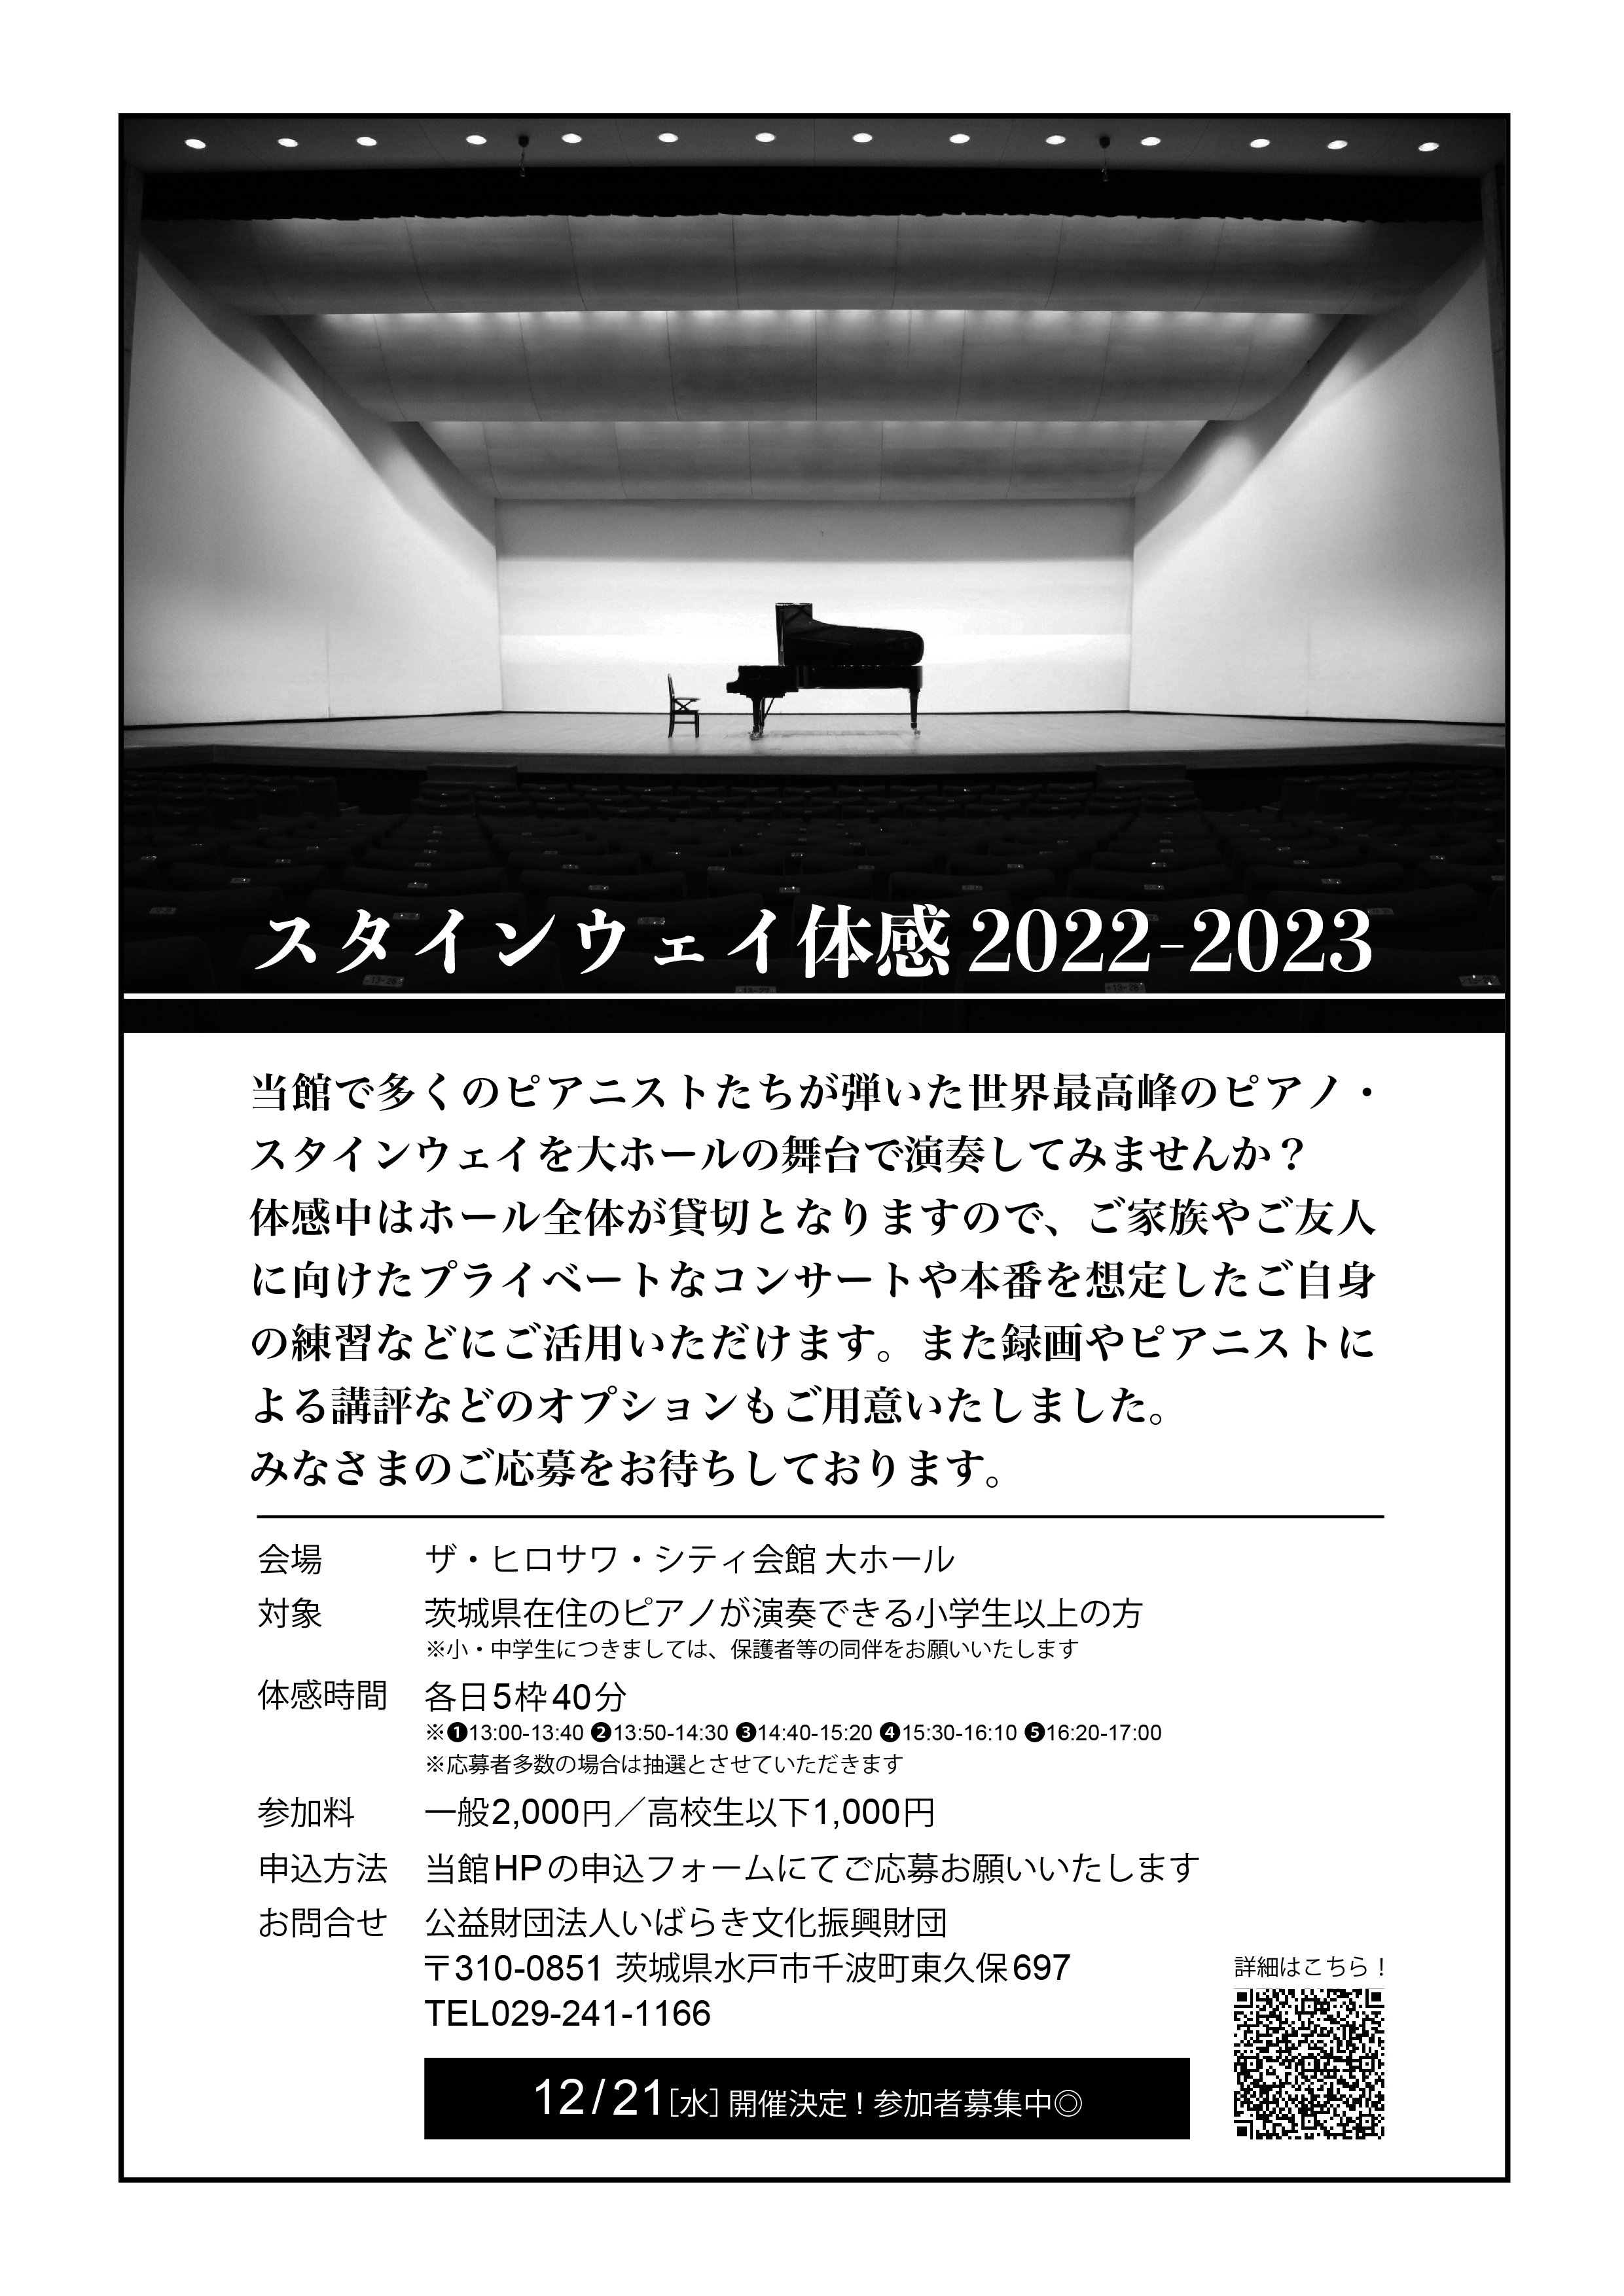 Steinway body sensation 2022-2023